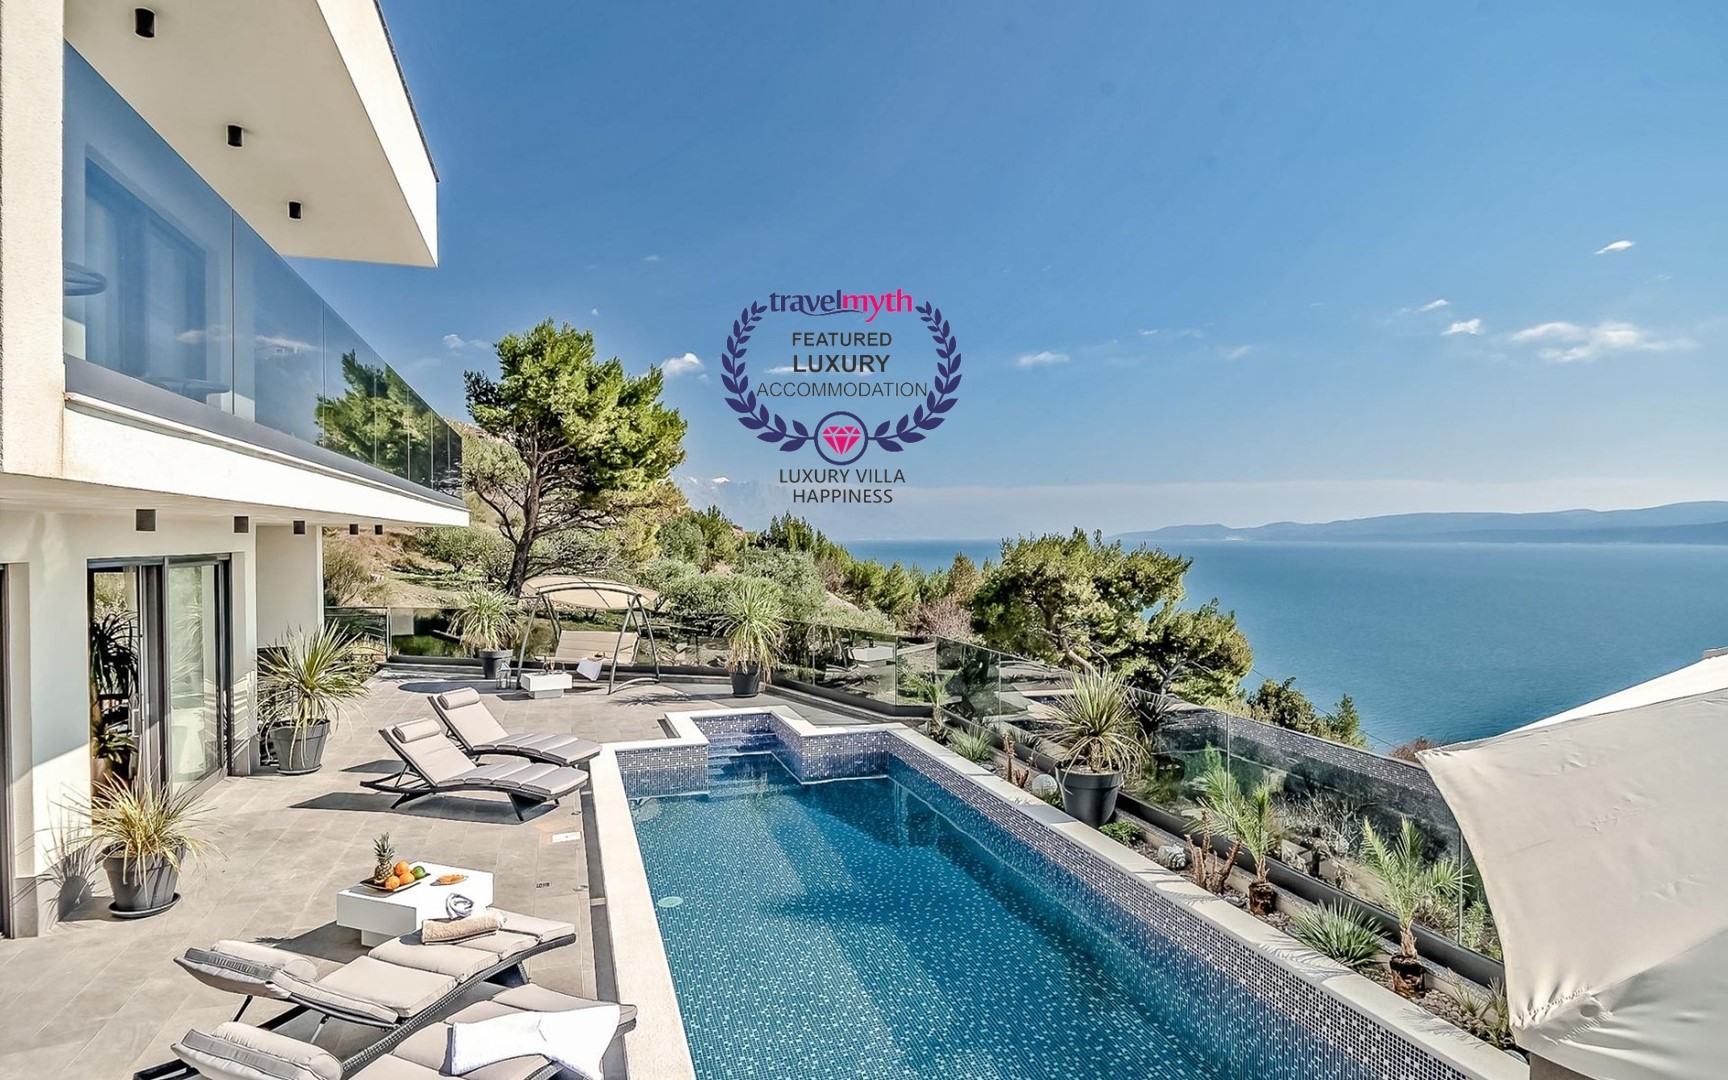 Prostrana ograđena terasa s privatnim bazenom okruženim ležaljkama za sunčanje te pogled na more s posjeda hrvatske luksuzne vile Happiness